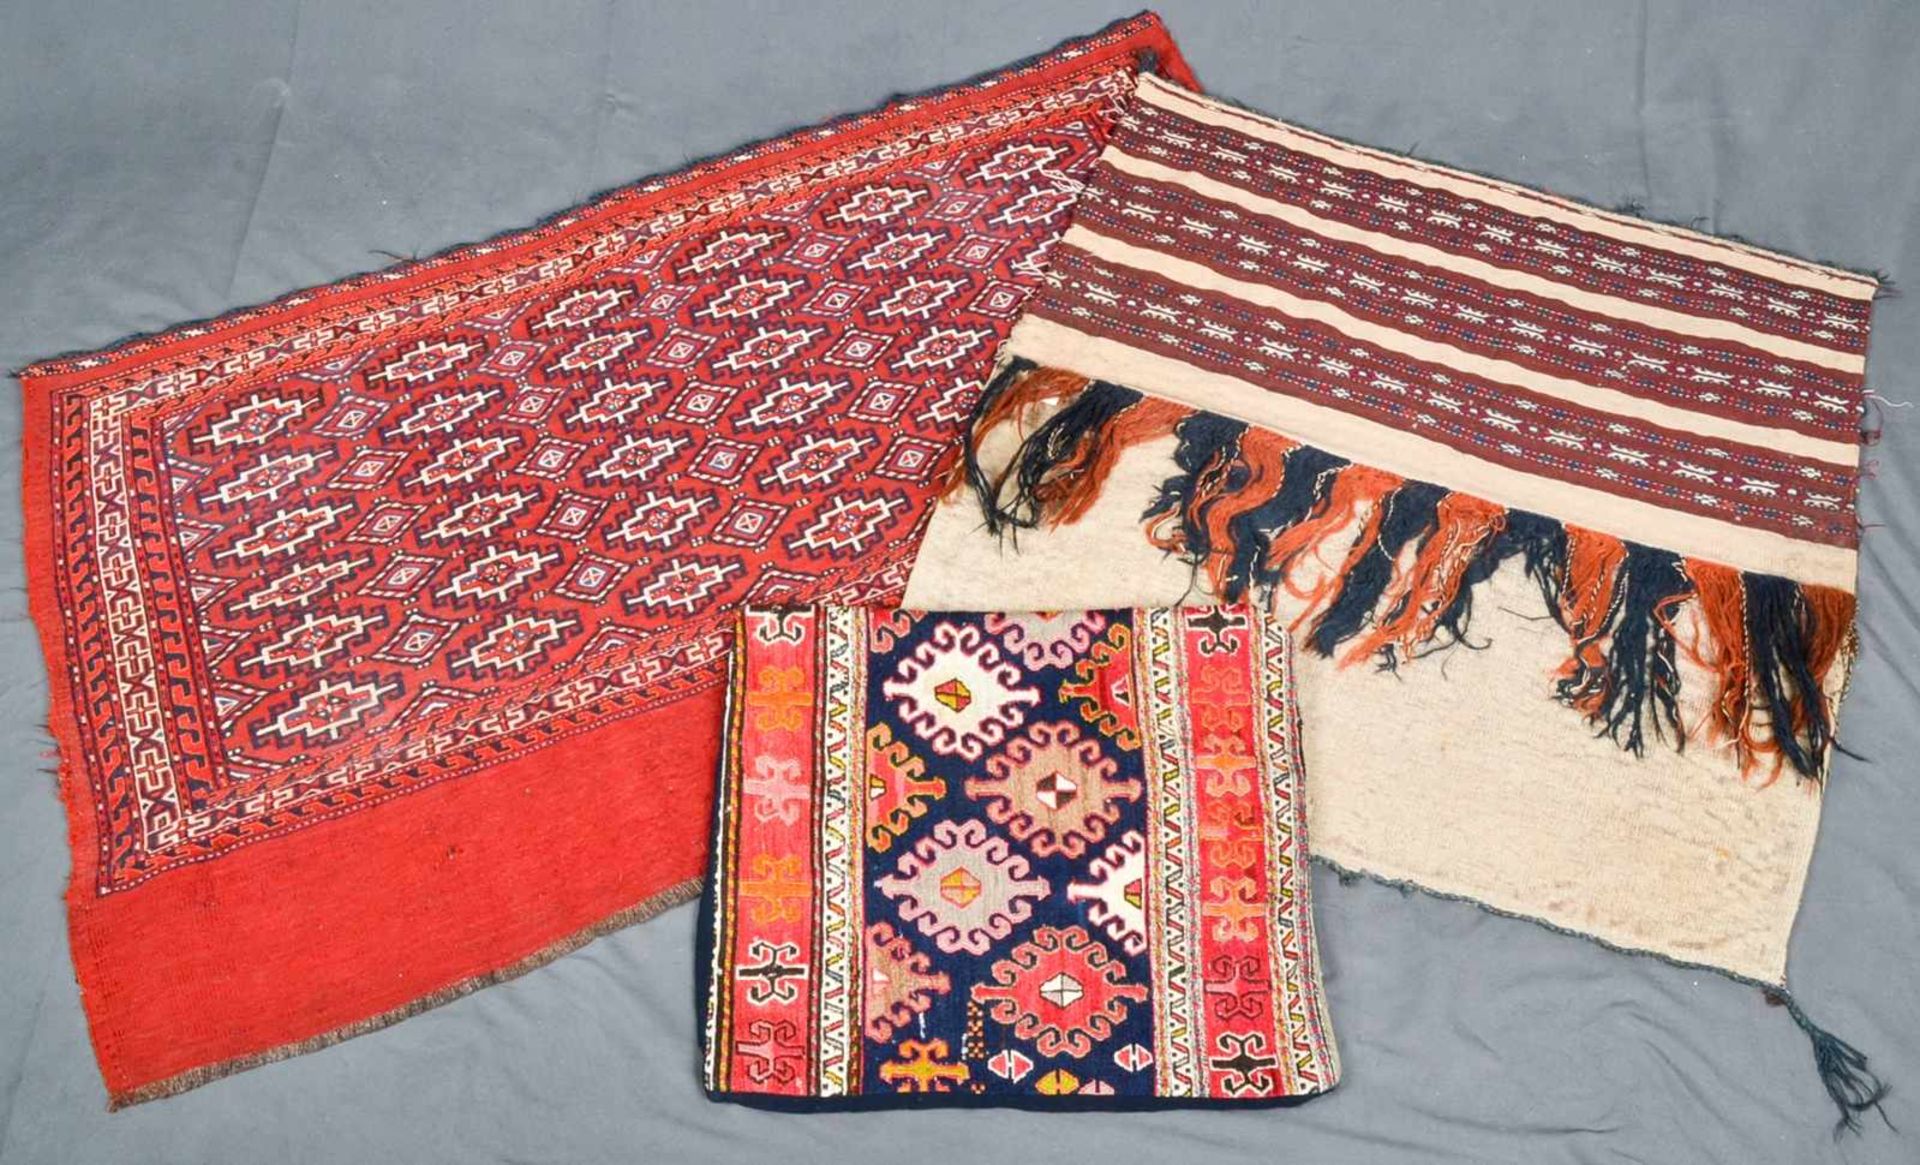 3teiliges Konvolut "alte und antike" Teppiche, bestehend aus drei versch. Kelim bzw. Flachgewebe- - Bild 2 aus 14